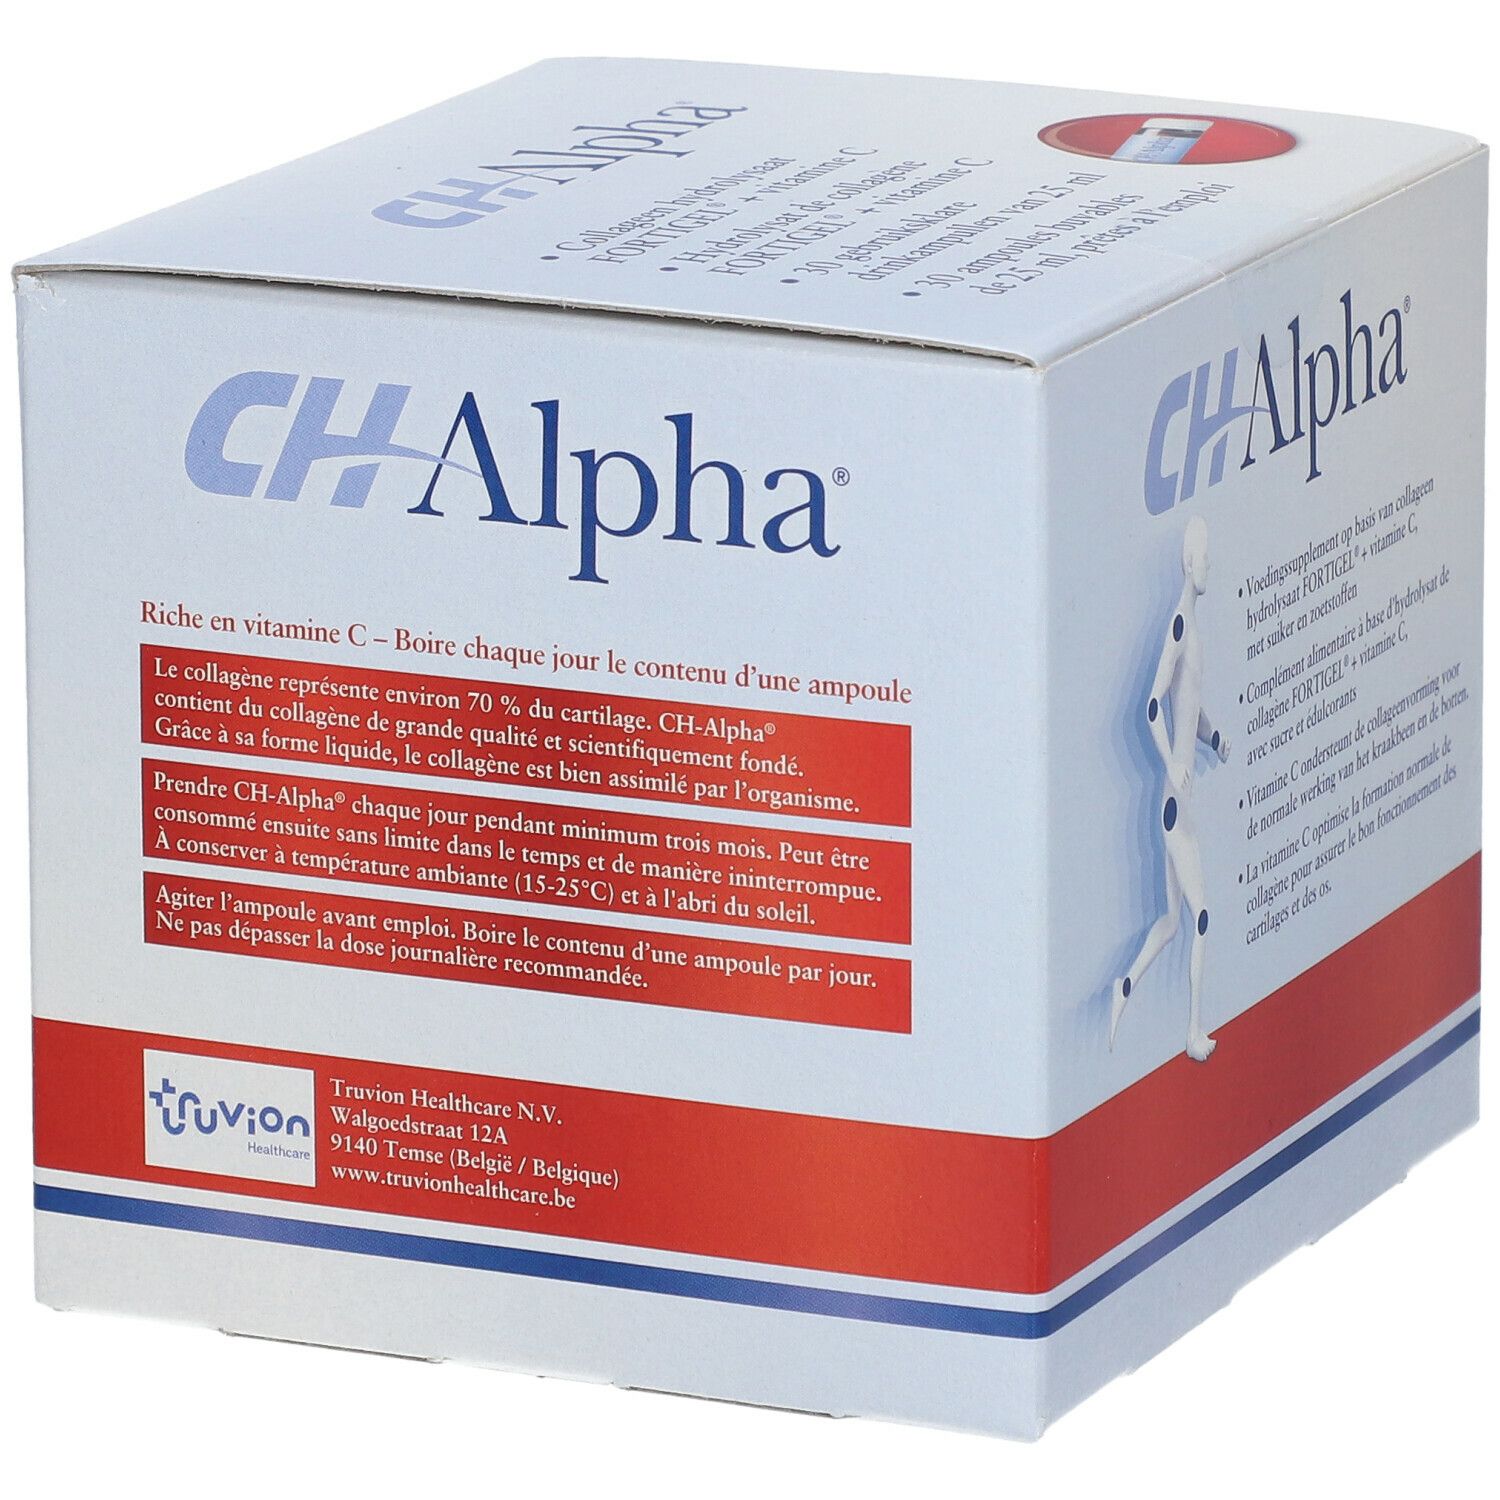 CH-Alpha®